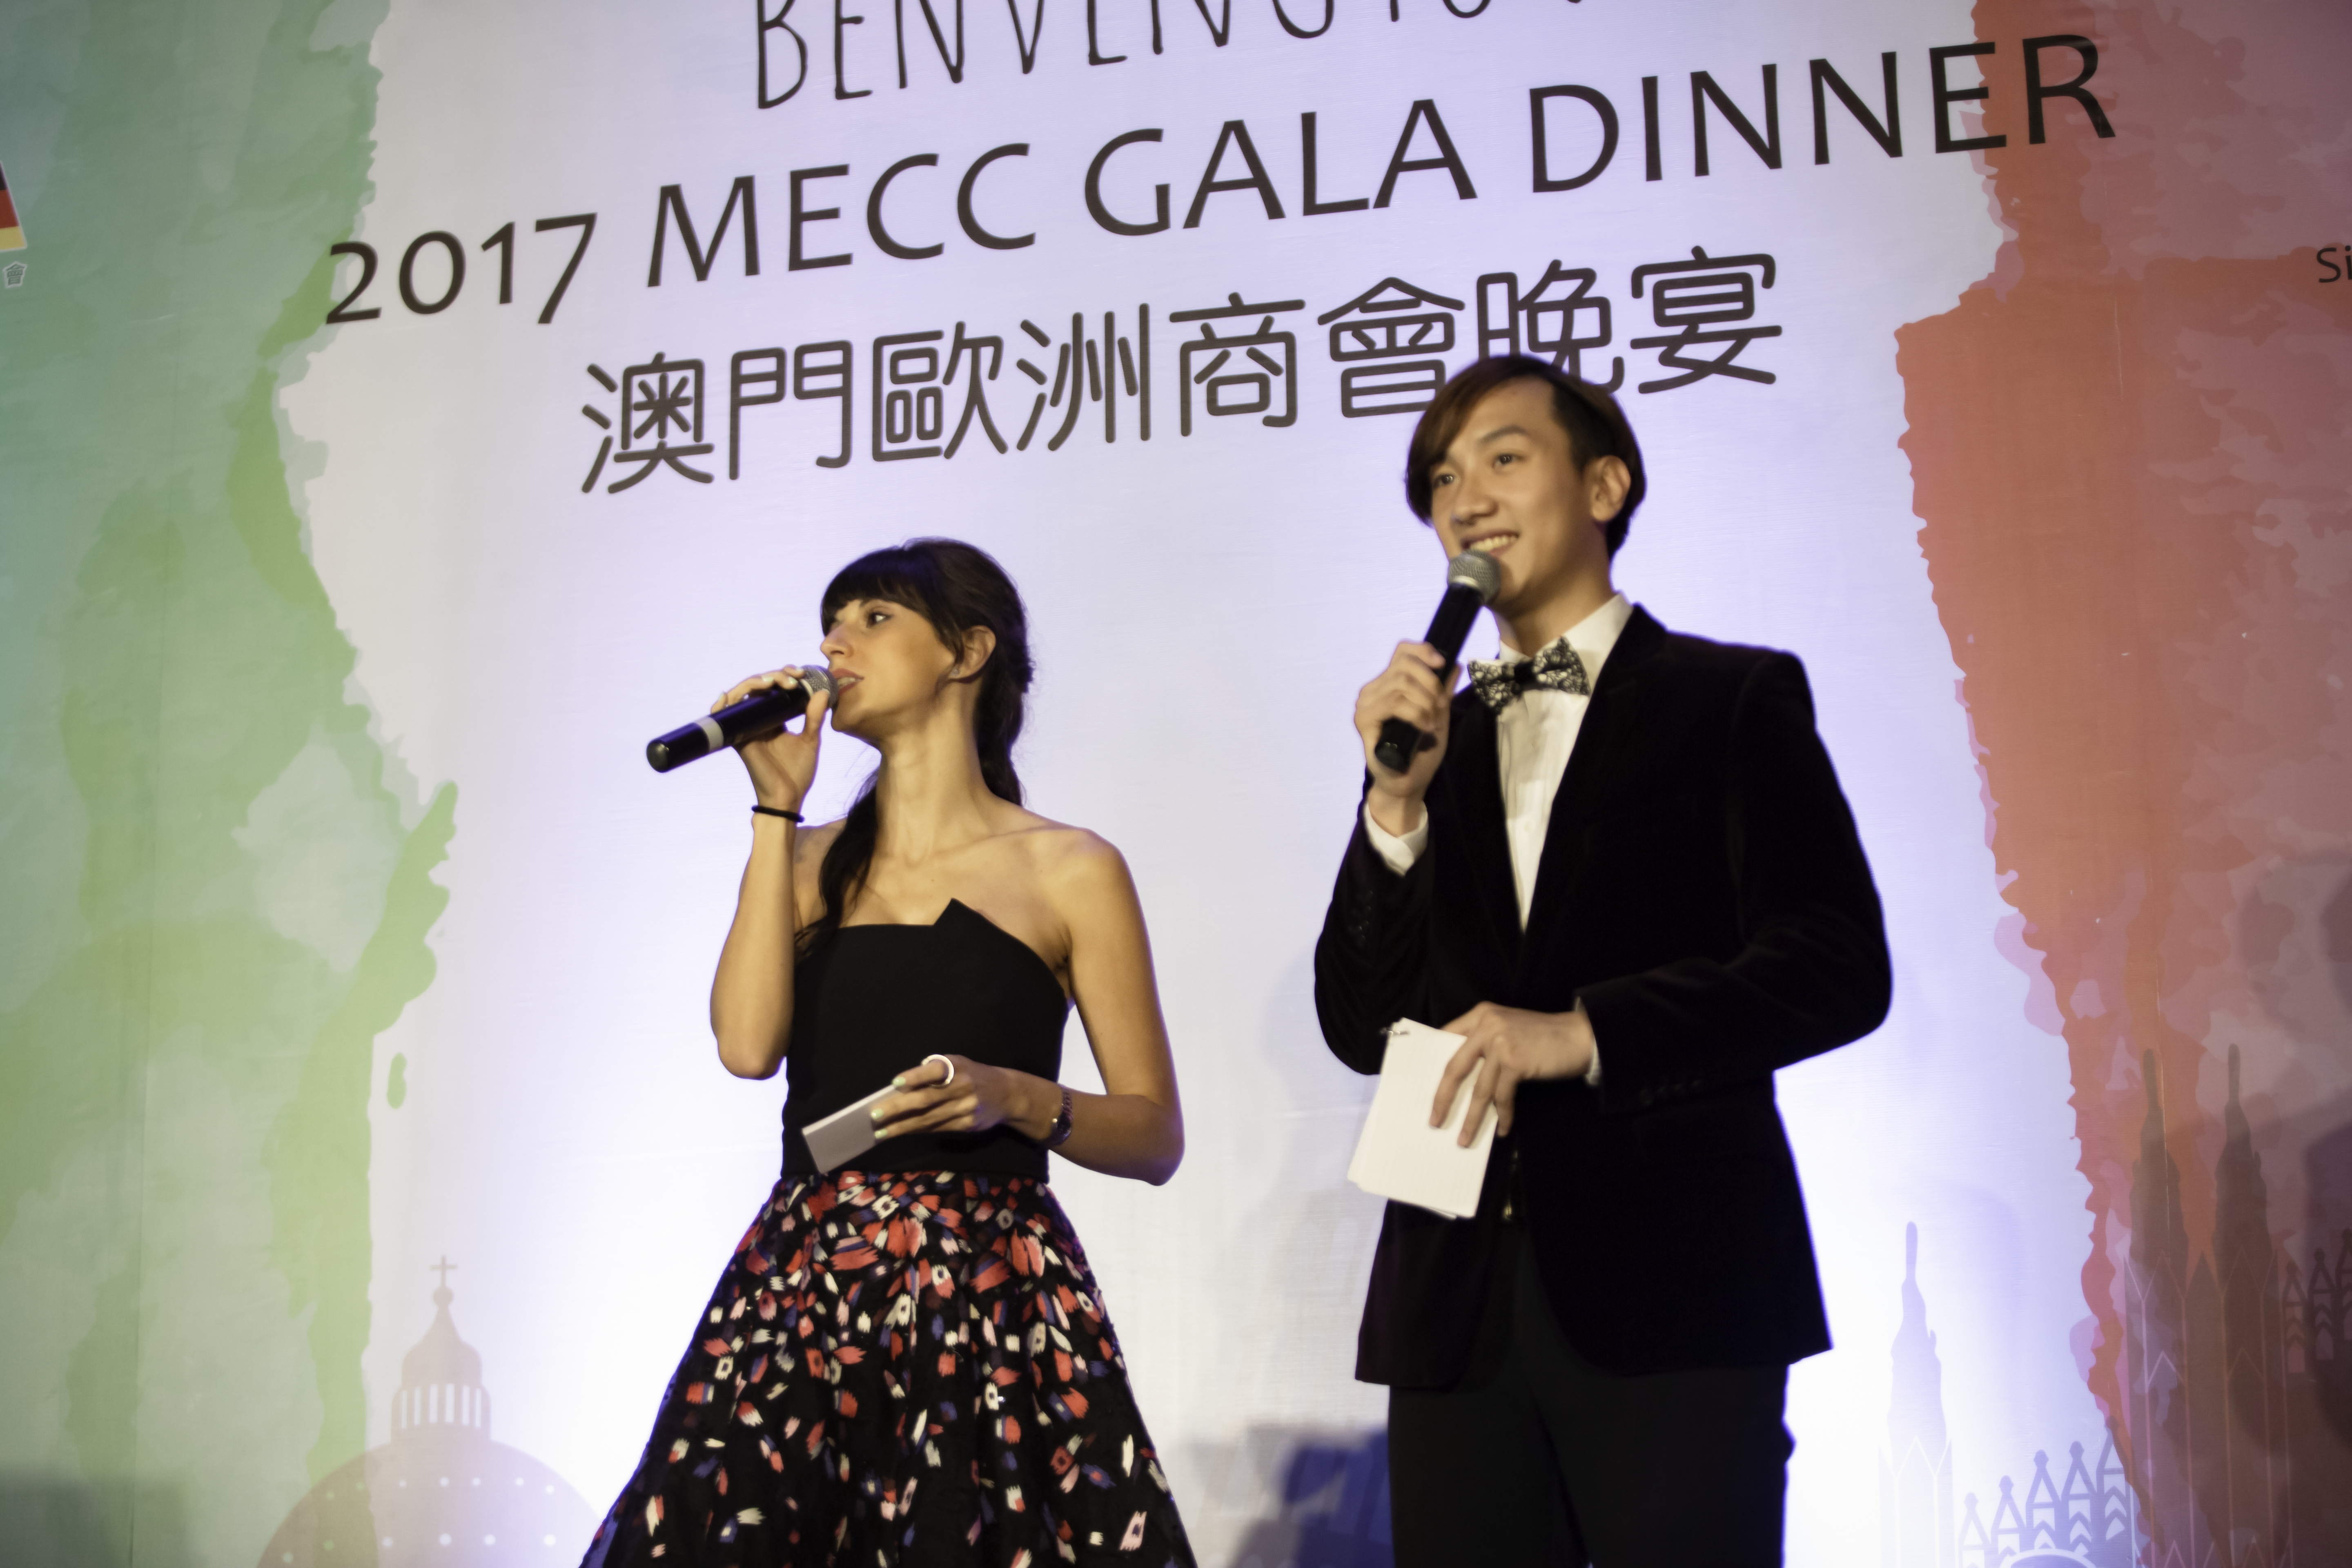 周啓陽 Elvis Chao司儀工作紀錄: 2017年澳門歐洲商會晚宴 2017 MECC Gala Dinner